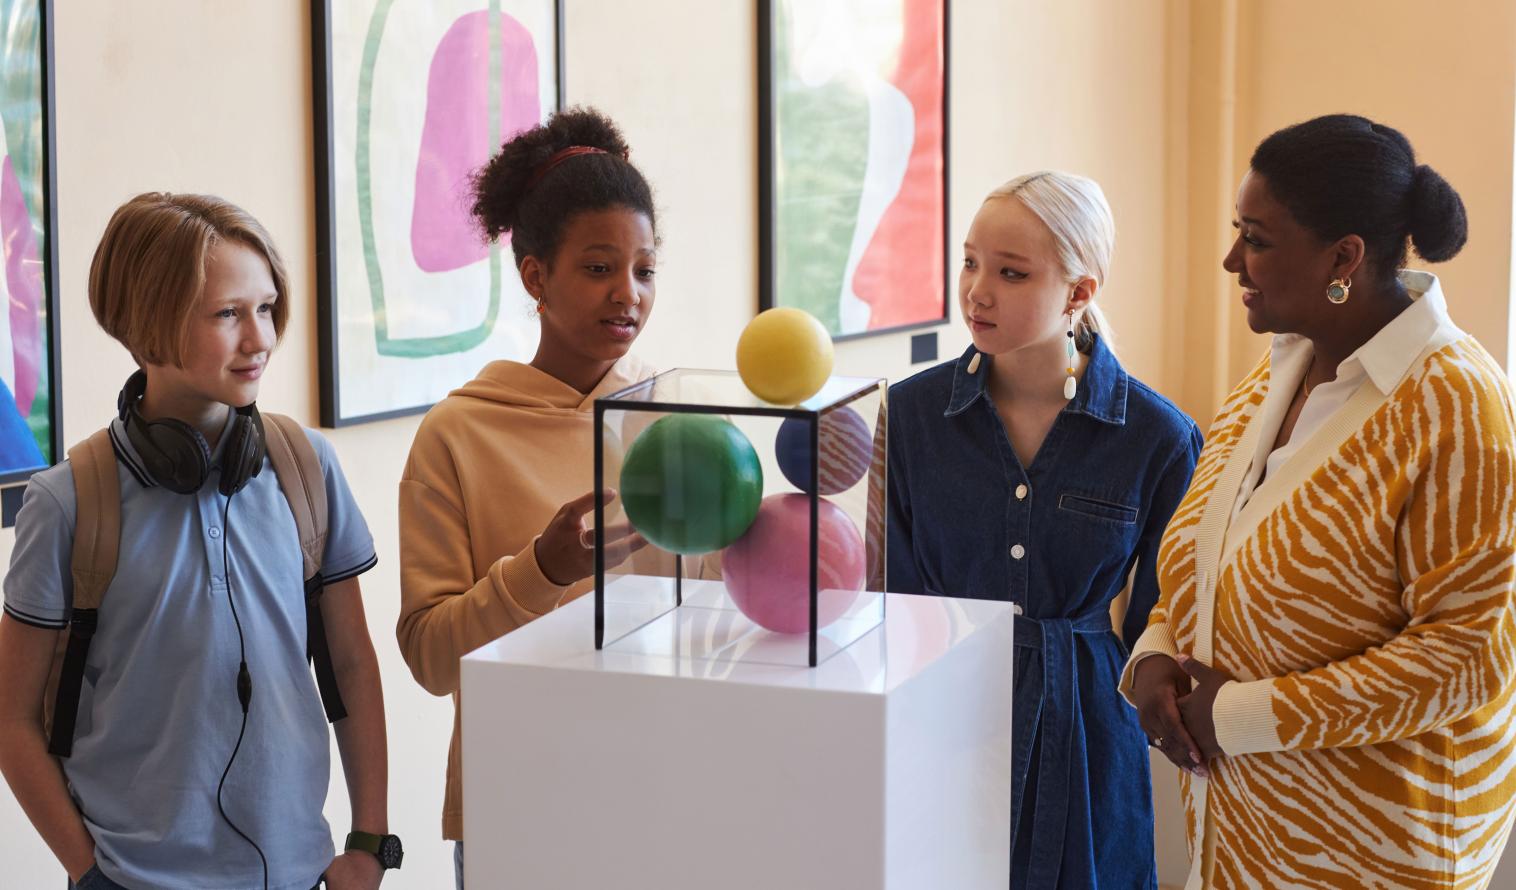 Eine vielfältige Gruppe von Teenagern steht mit einer Lehrerin bei einer Ausstellung vor einem mit bunten Bällen gefüllten Glaskasten.